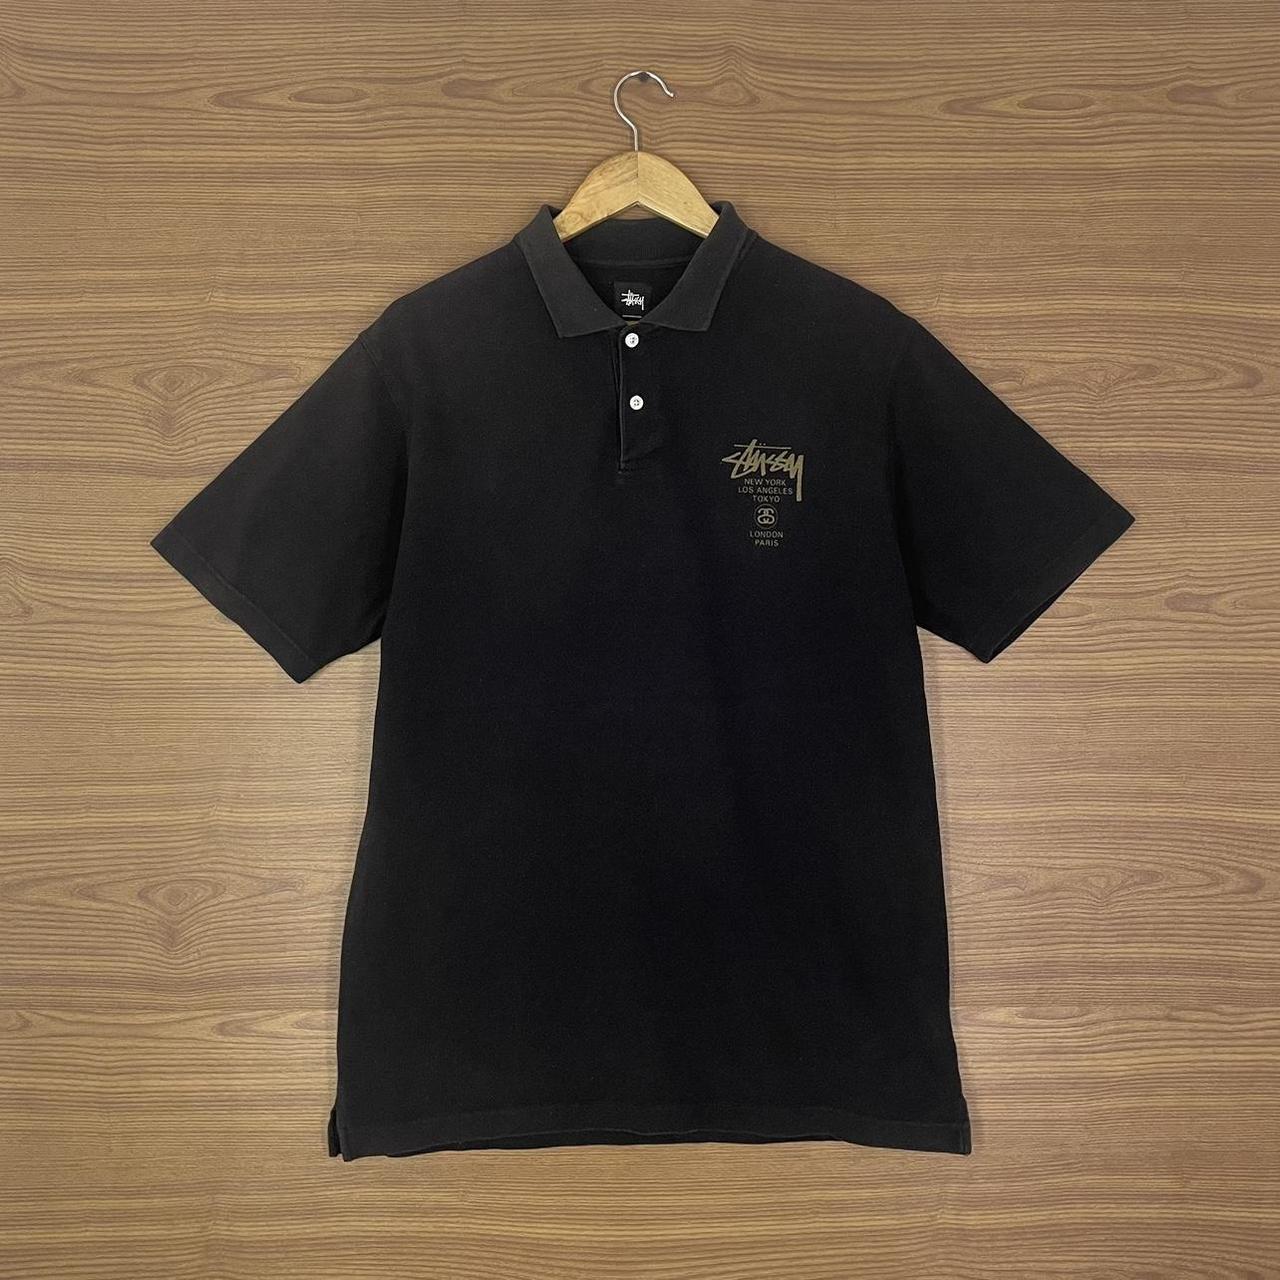 Stüssy Men's Black Polo-shirts | Depop